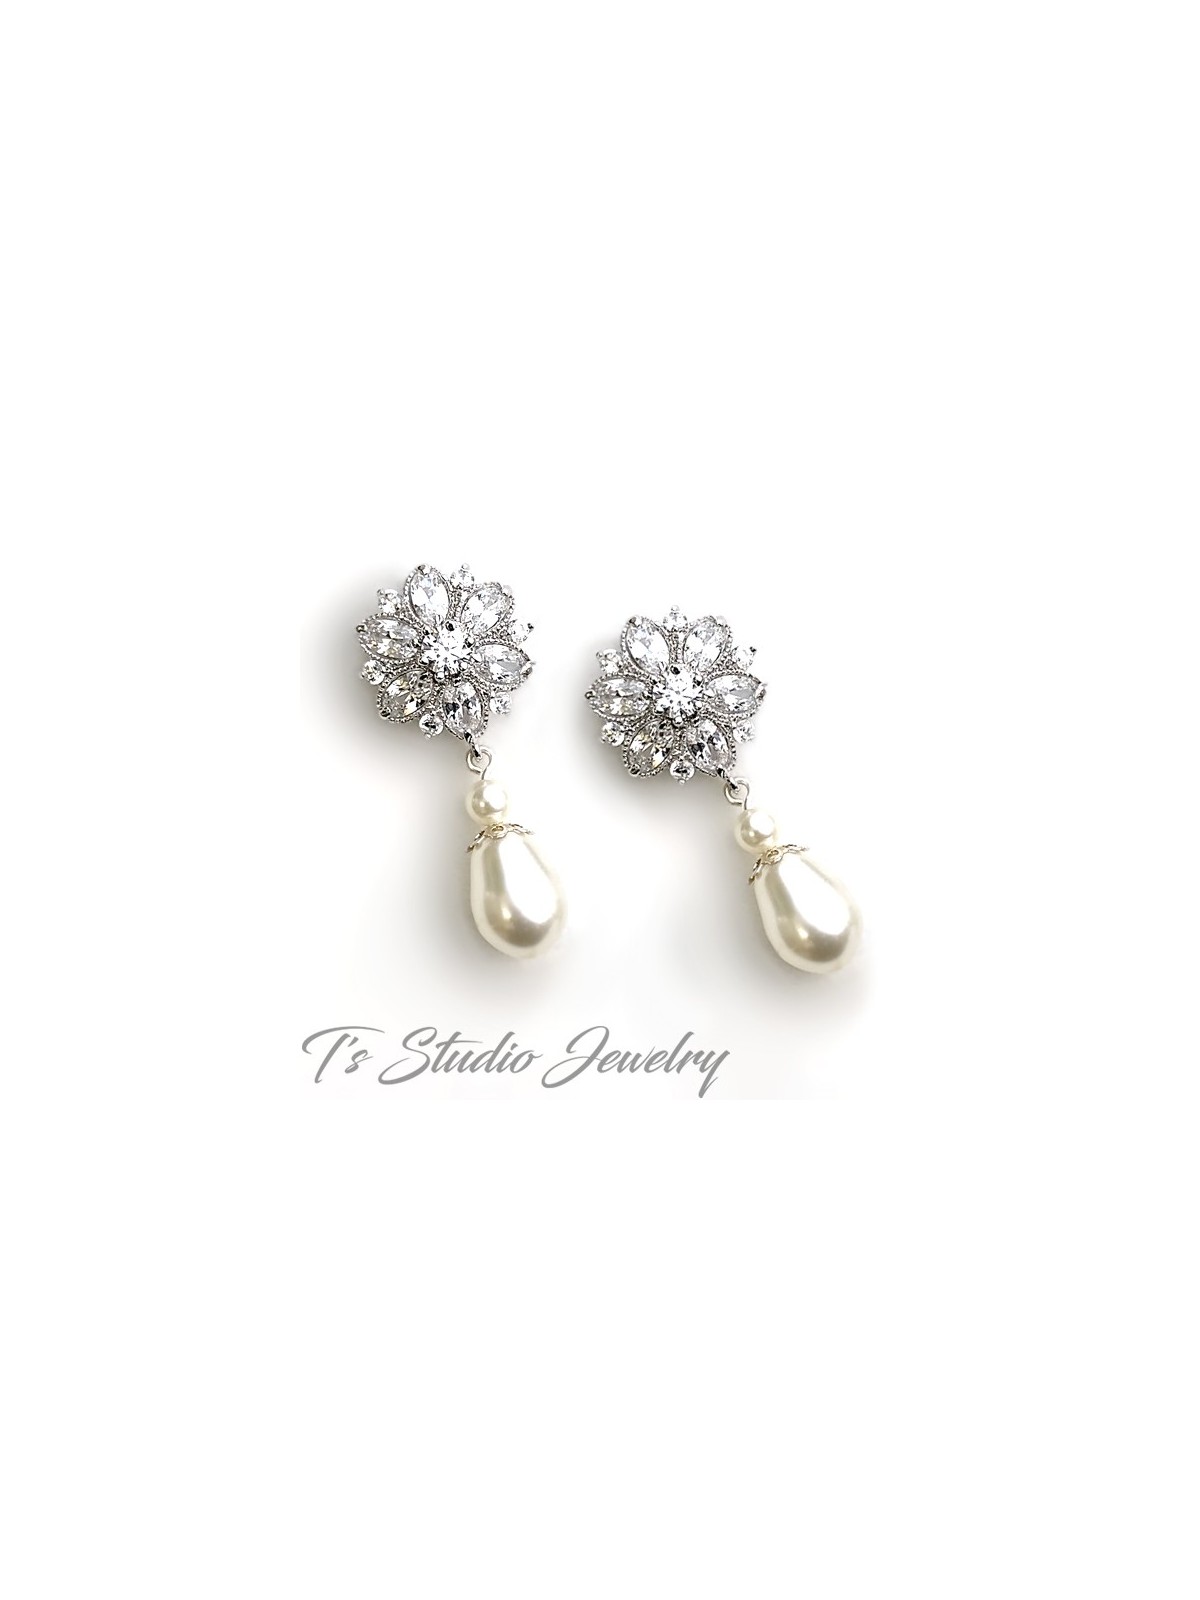 Cubic Zirconia Crystal Flower Bridal Earrings with Teardrop Pearl